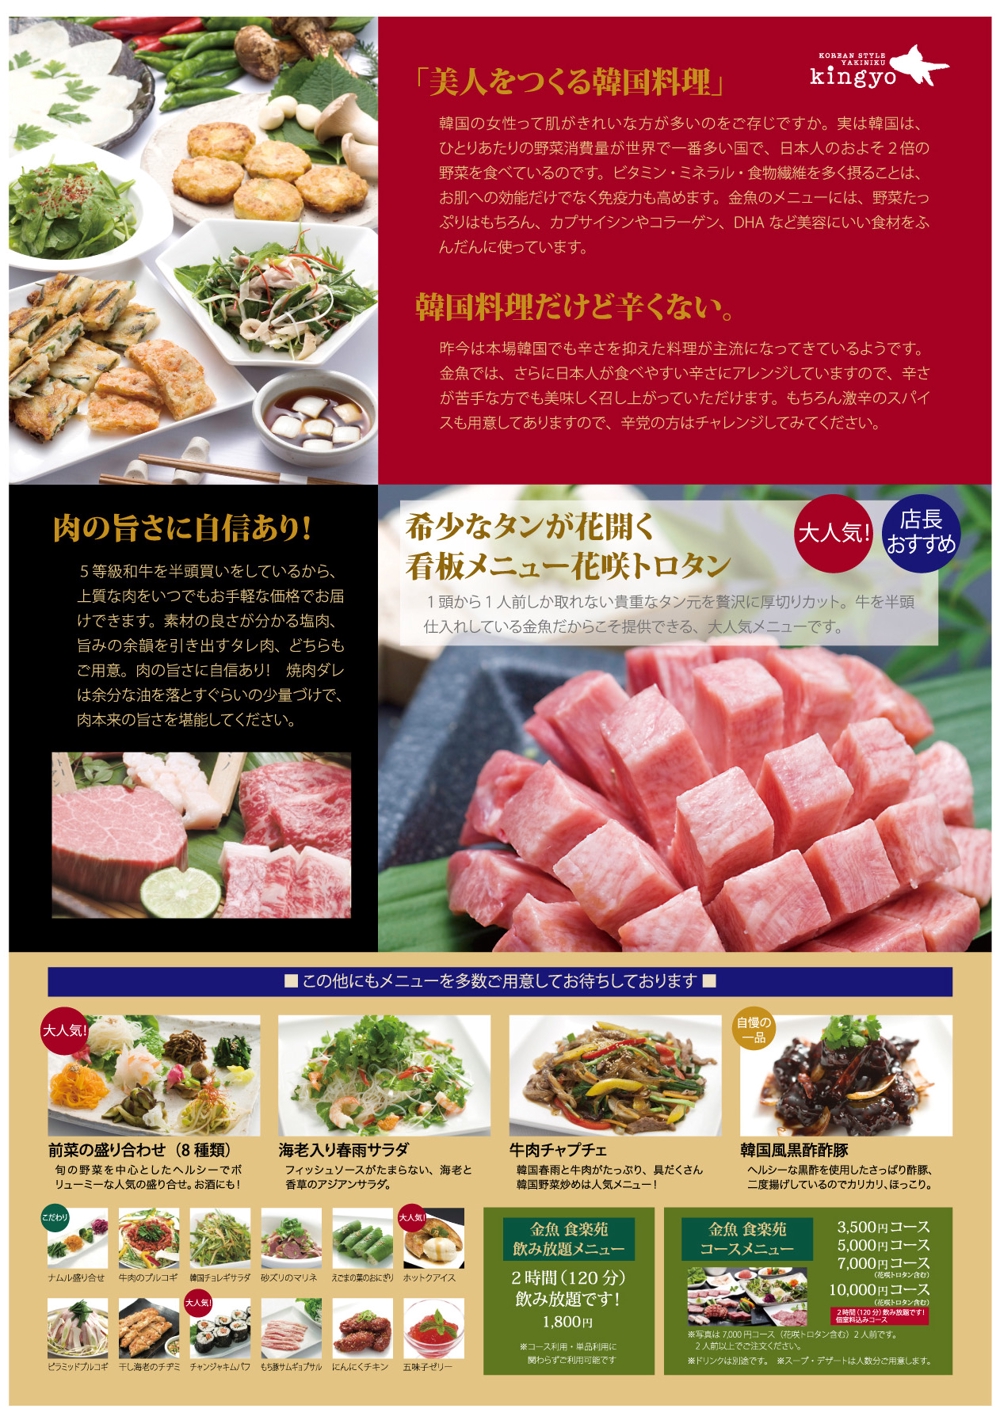 美人を作る韓国料理と厳選焼肉の店「食楽苑金魚」のパンフレット